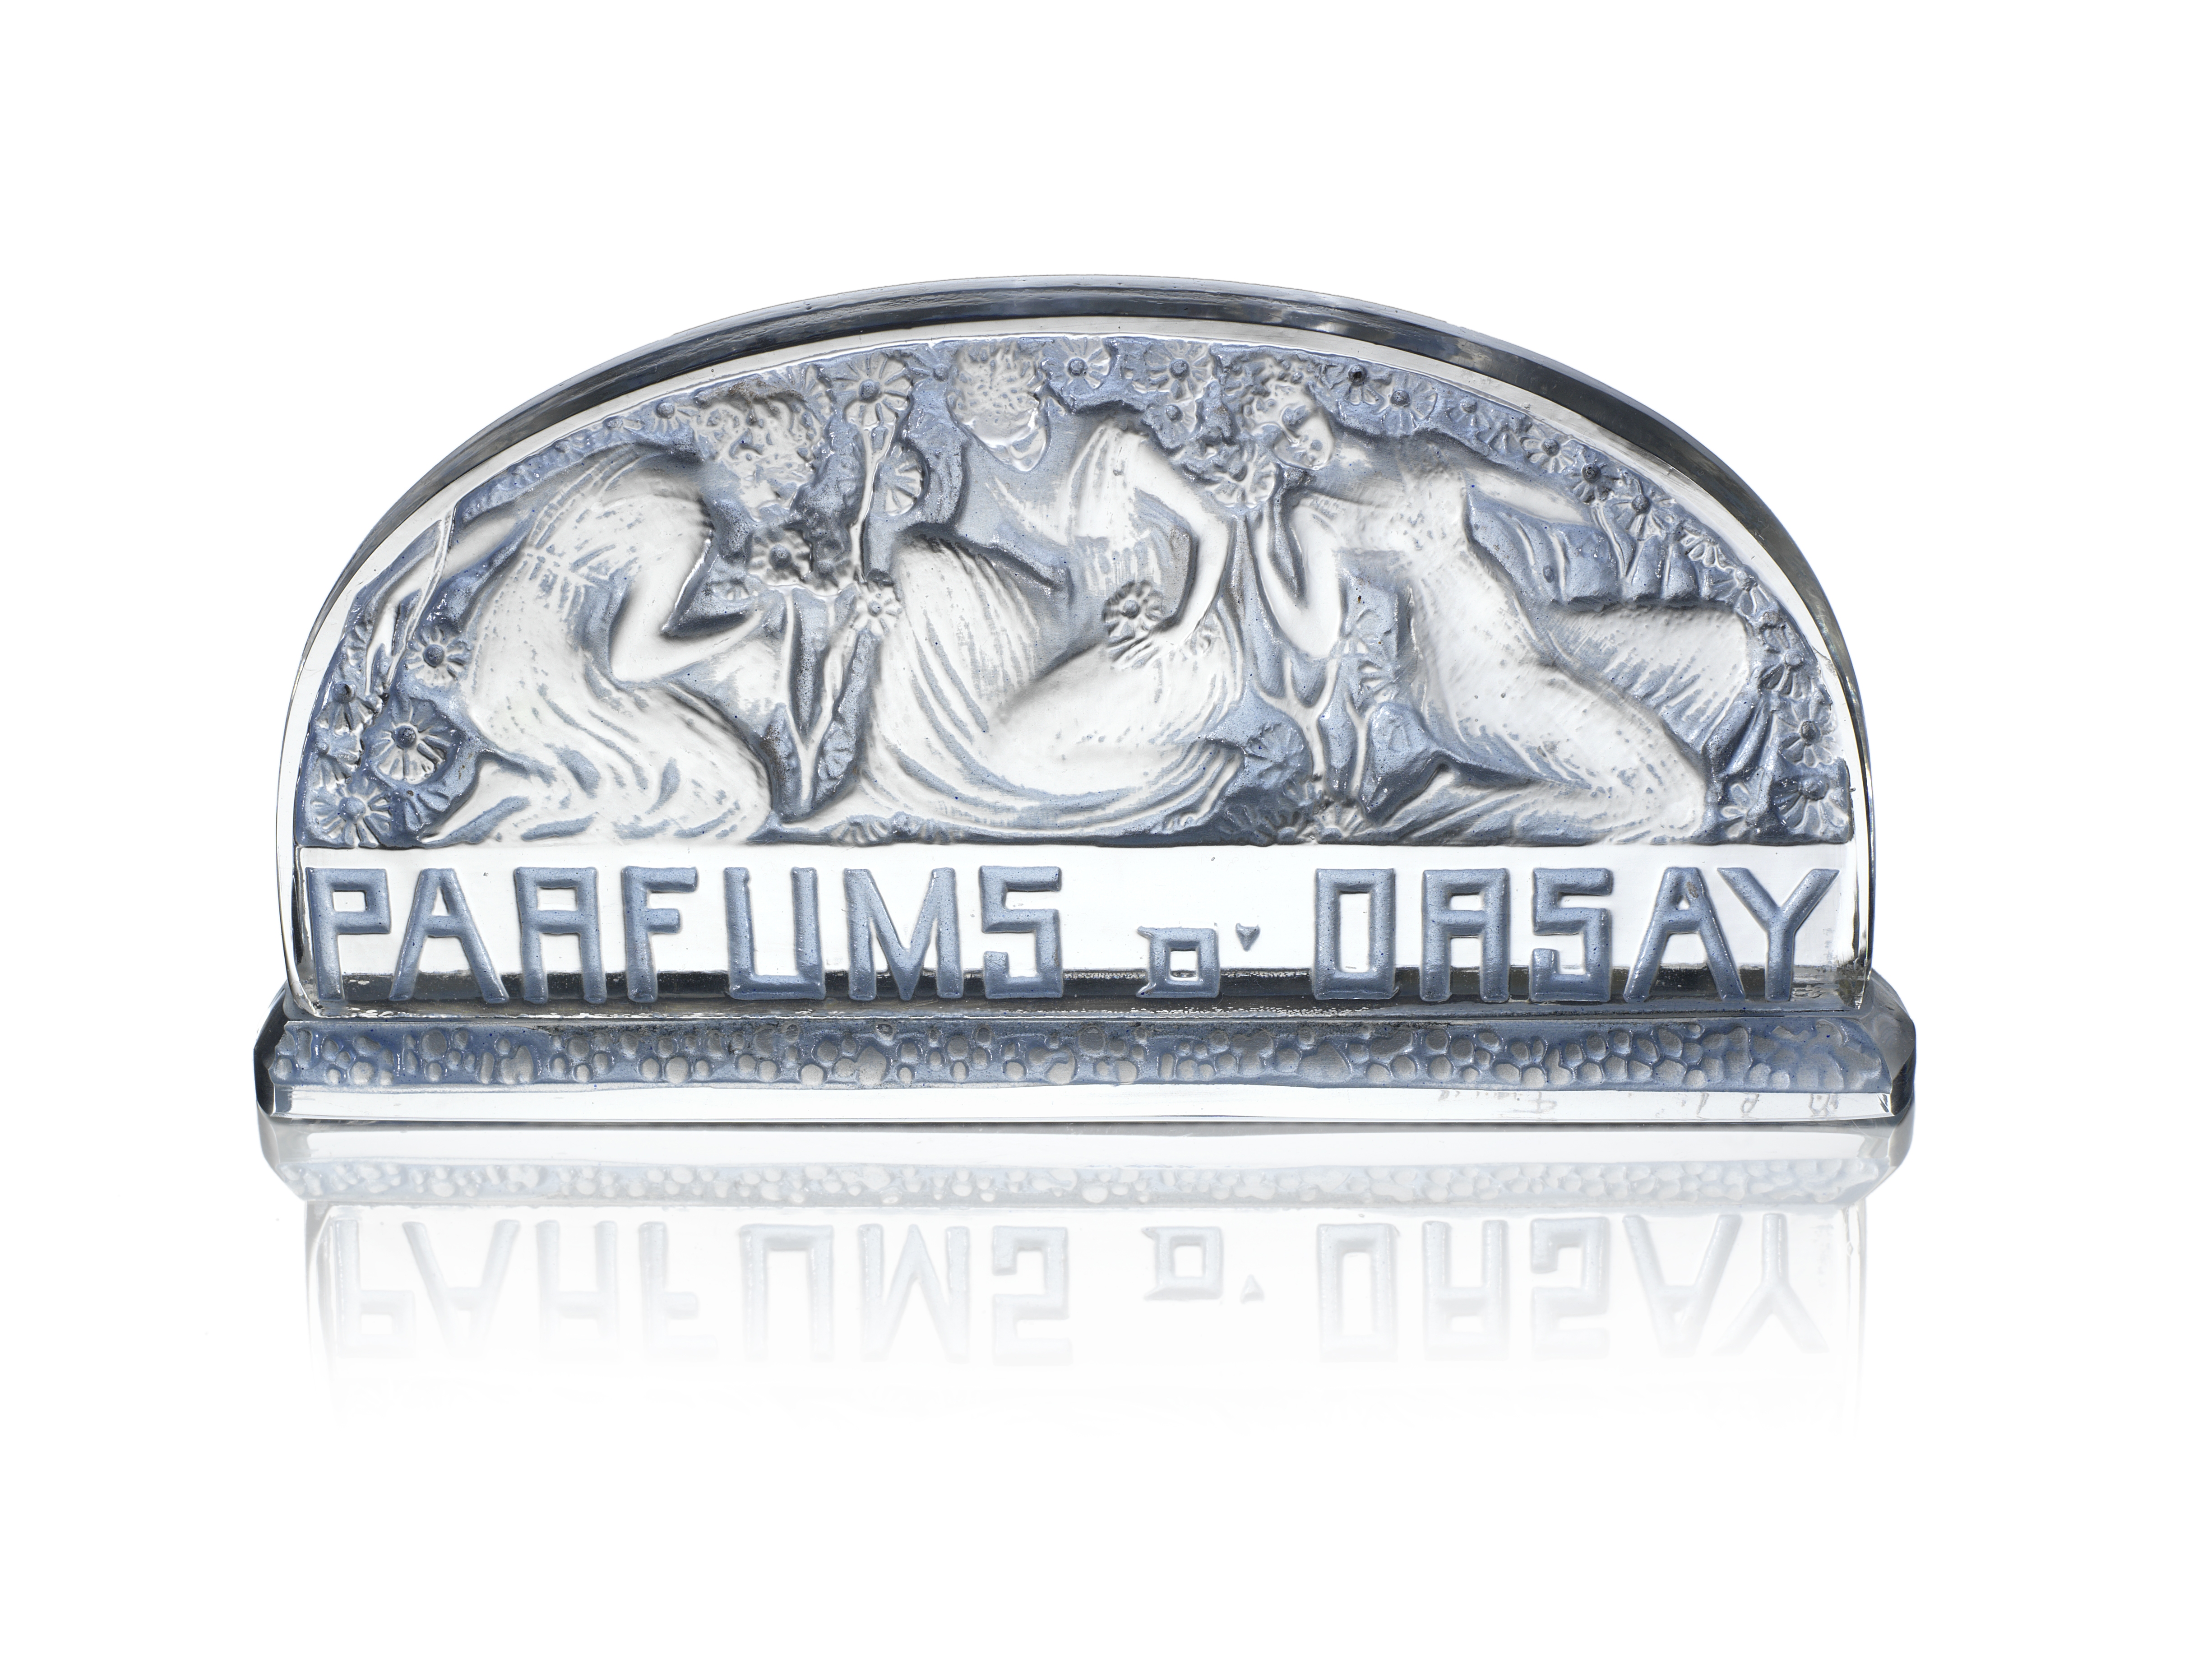 RENÉ LALIQUE (FRENCH, 1860-1945) A Pre-War 'Parfums D'Orsay' Plaquette Publicitaire, design intro... - Image 2 of 2